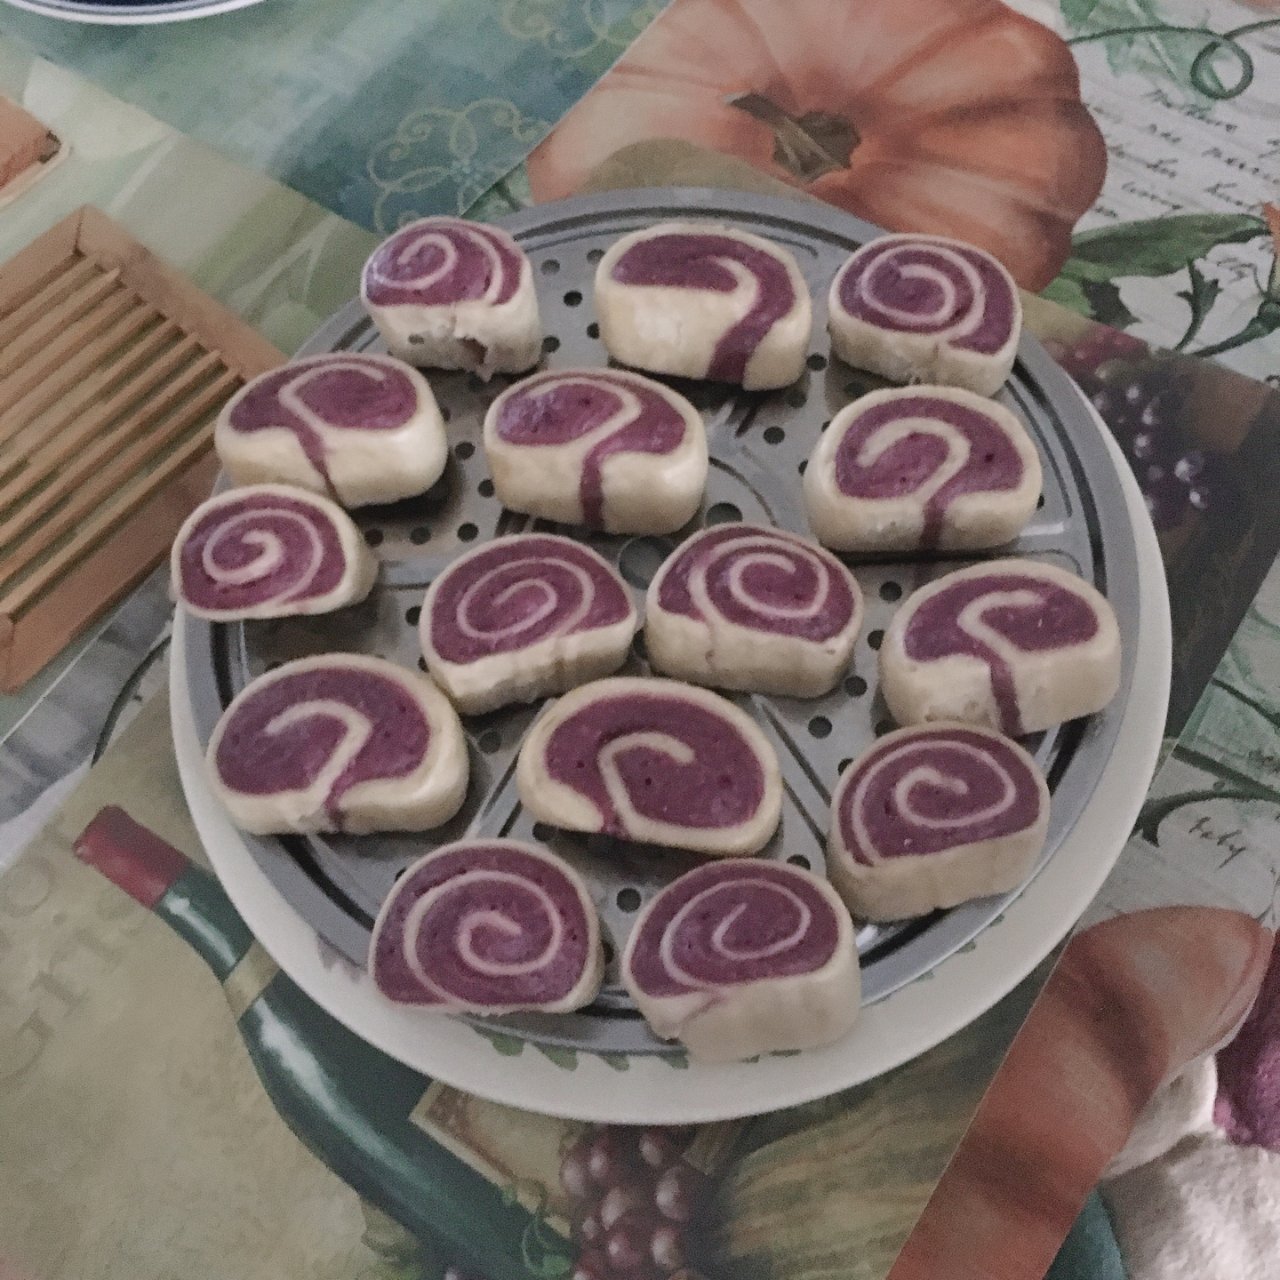 紫薯馒头🍠